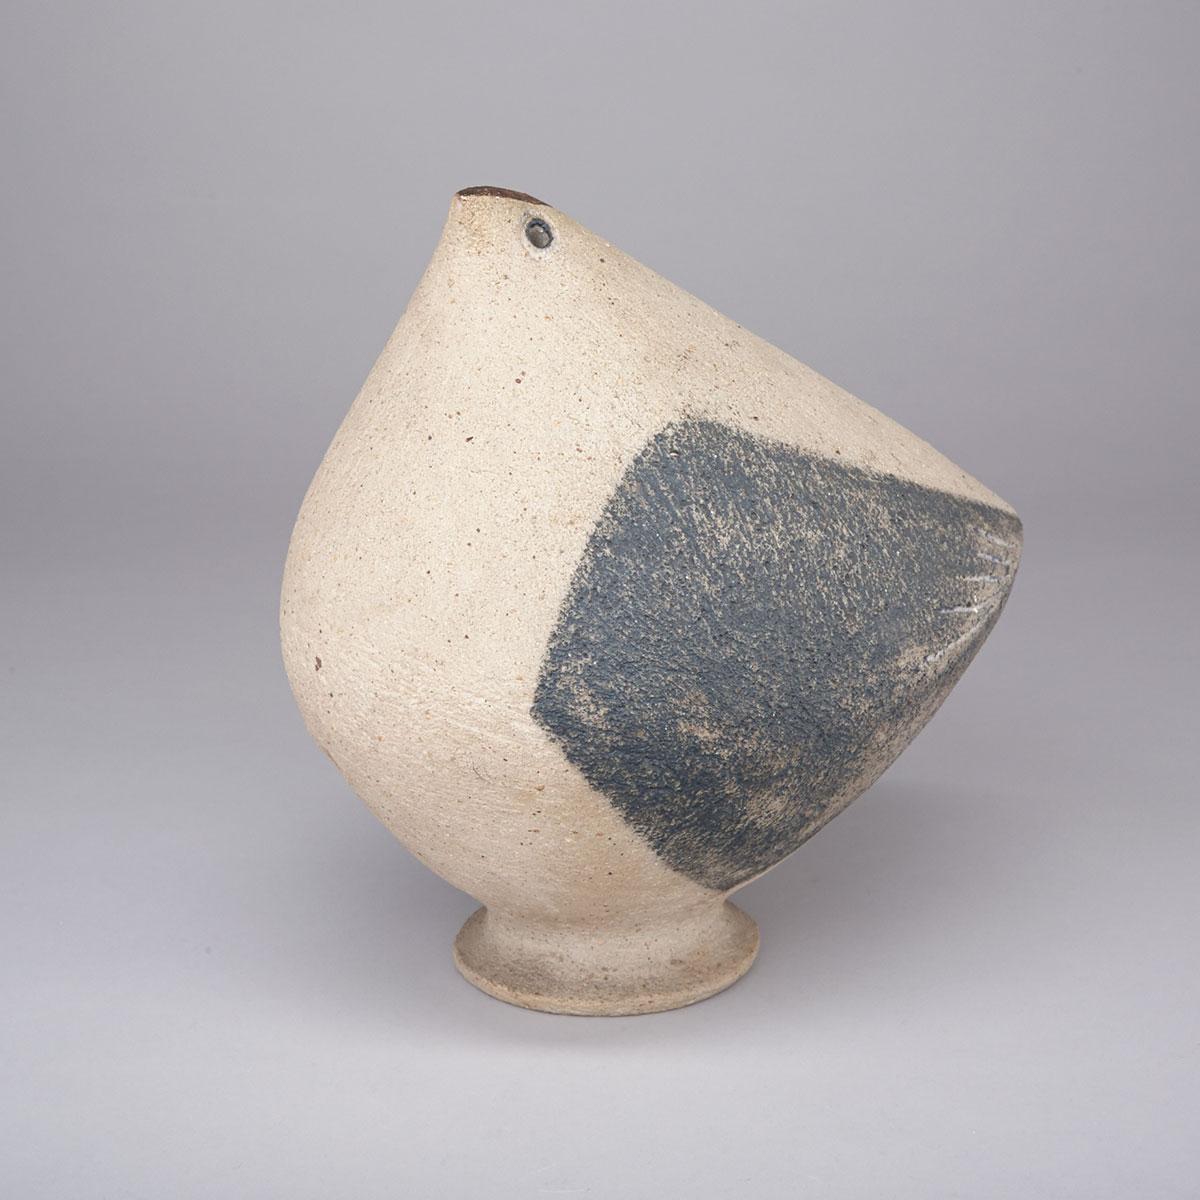 Oxshott Pottery Bird, Rosemary Wren, mid-20th century